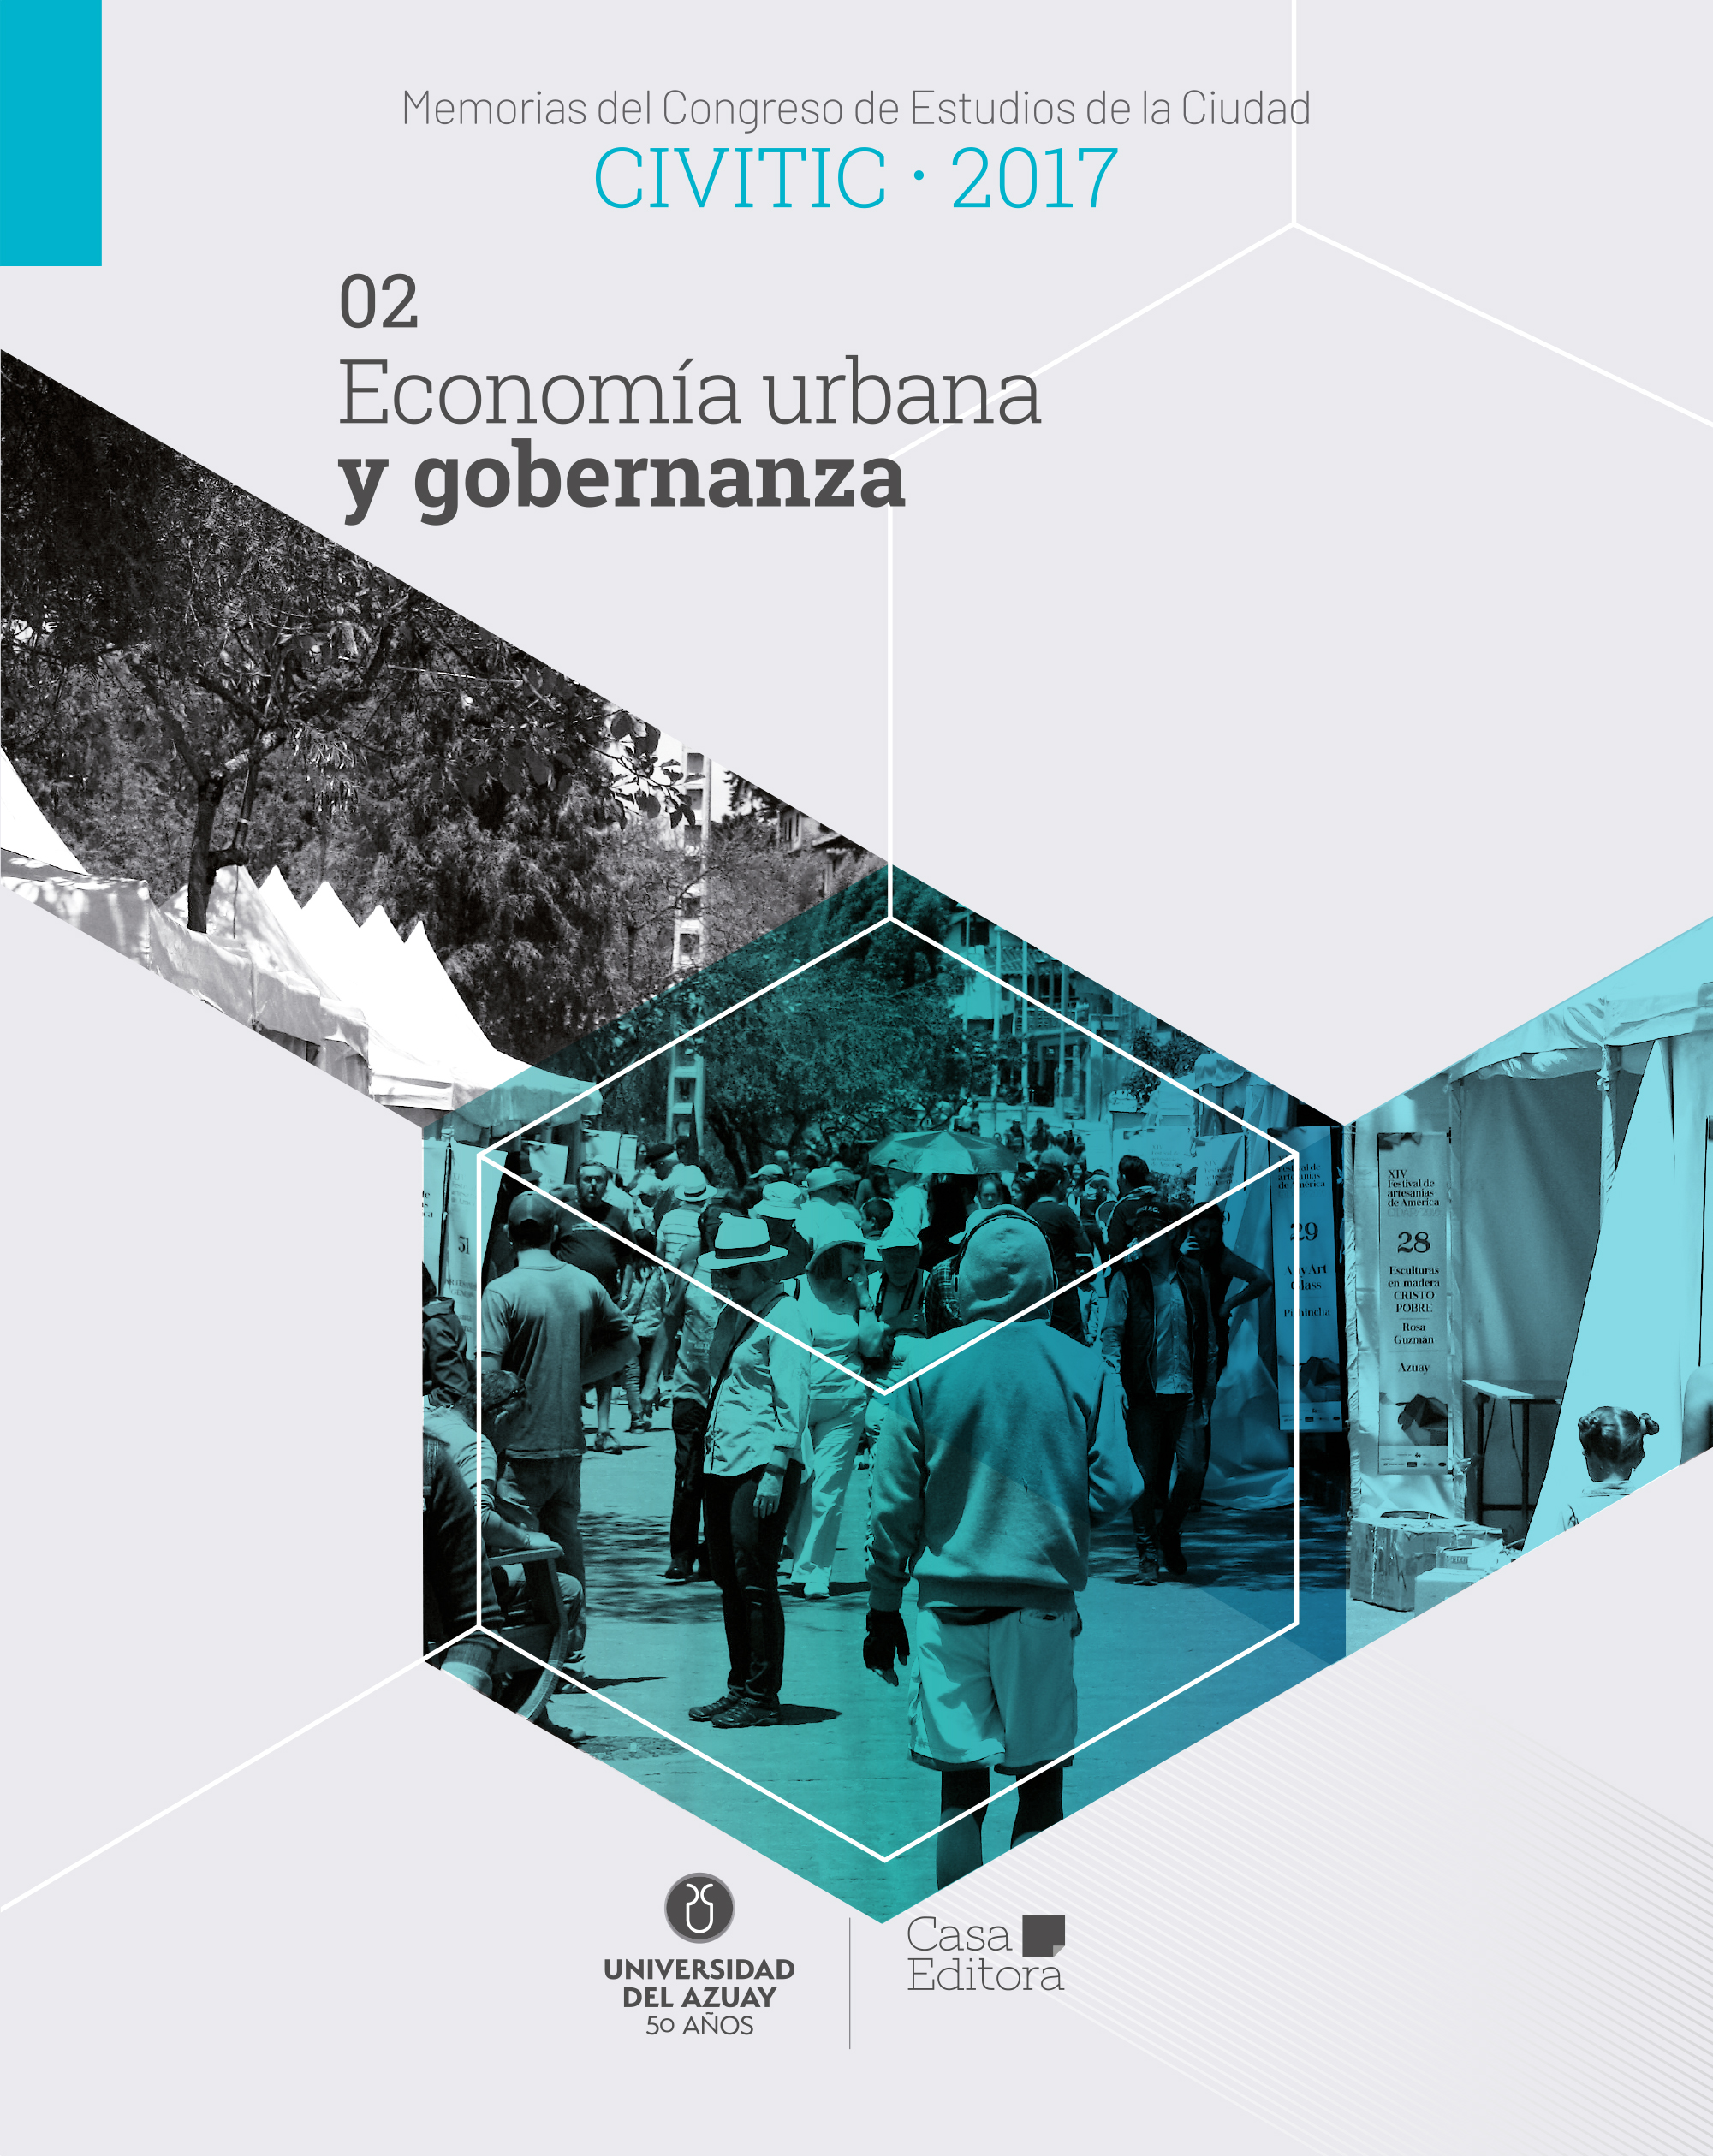 					Ver Memorias del Congreso de Estudios de la Ciudad CIVITIC 2017 - Economía urbana y gobernanza
				